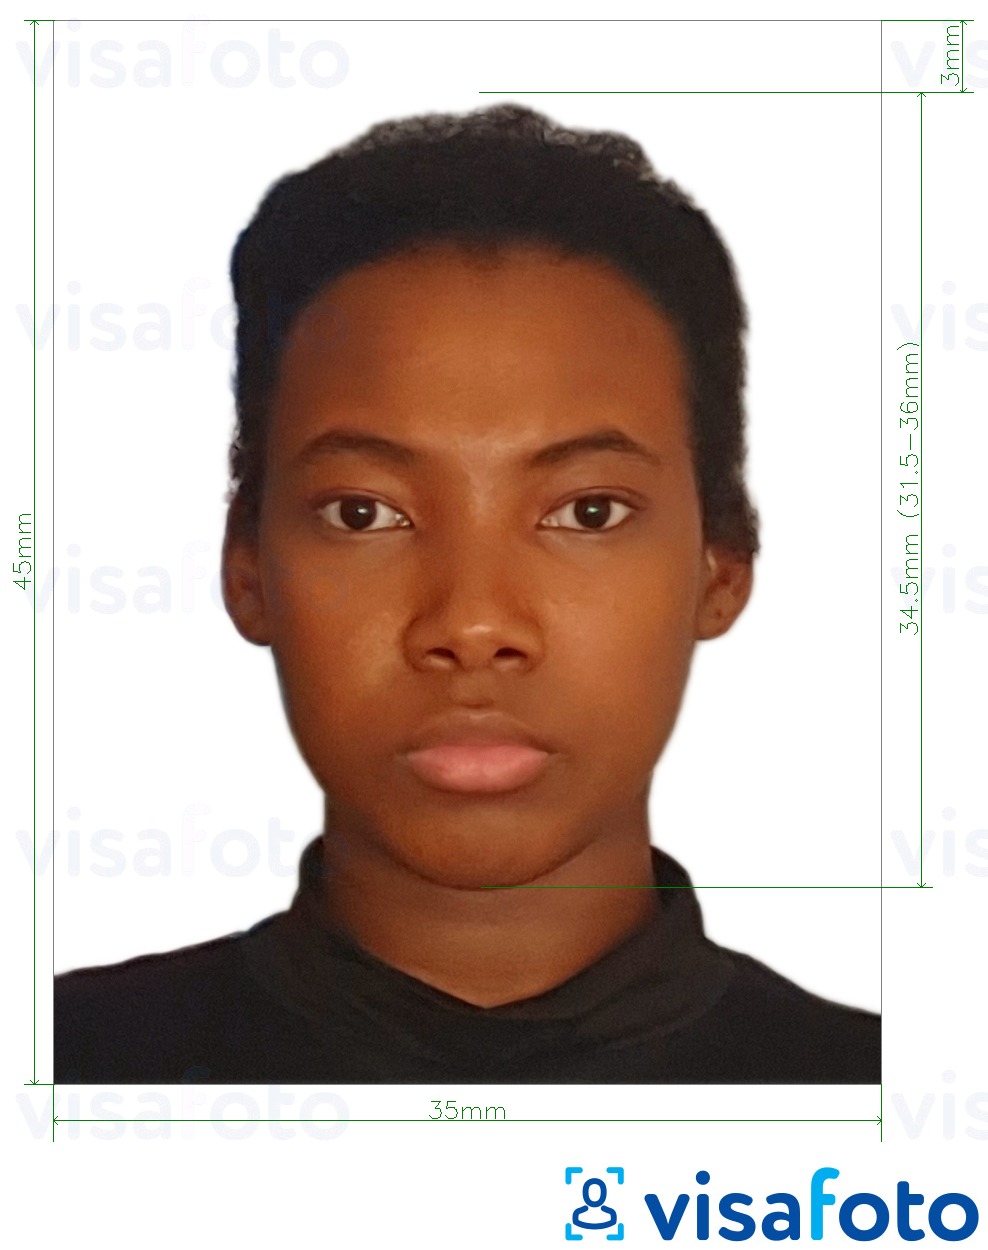 Ejemplo de foto para Visa de Ghana 3.5x4.5 cm (35x45 mm) con la especificación del tamaño exacto